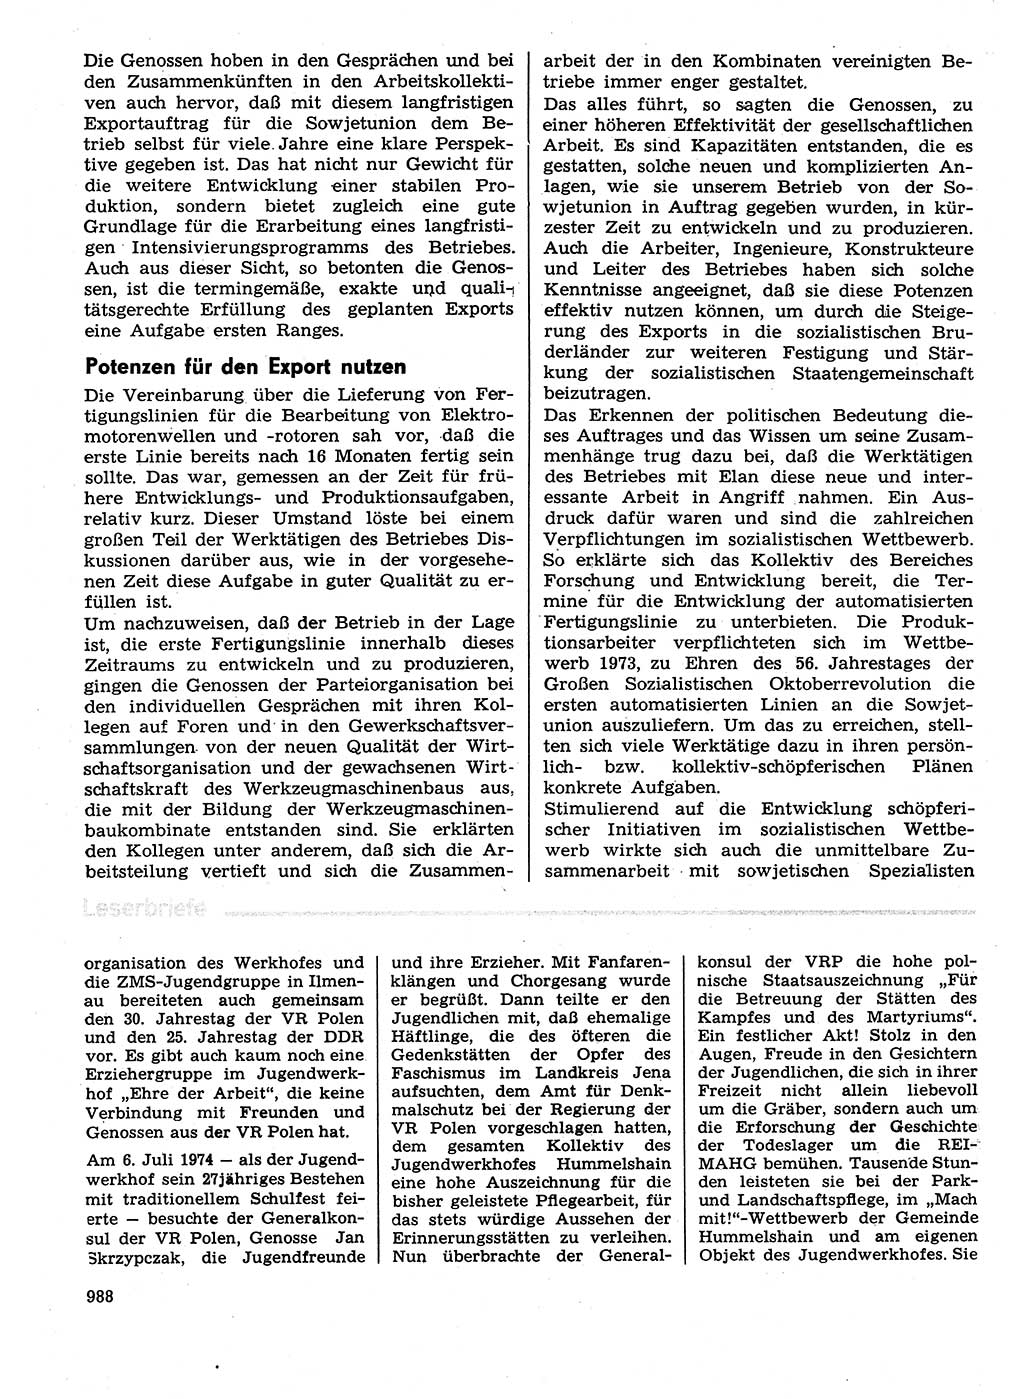 Neuer Weg (NW), Organ des Zentralkomitees (ZK) der SED (Sozialistische Einheitspartei Deutschlands) für Fragen des Parteilebens, 29. Jahrgang [Deutsche Demokratische Republik (DDR)] 1974, Seite 988 (NW ZK SED DDR 1974, S. 988)